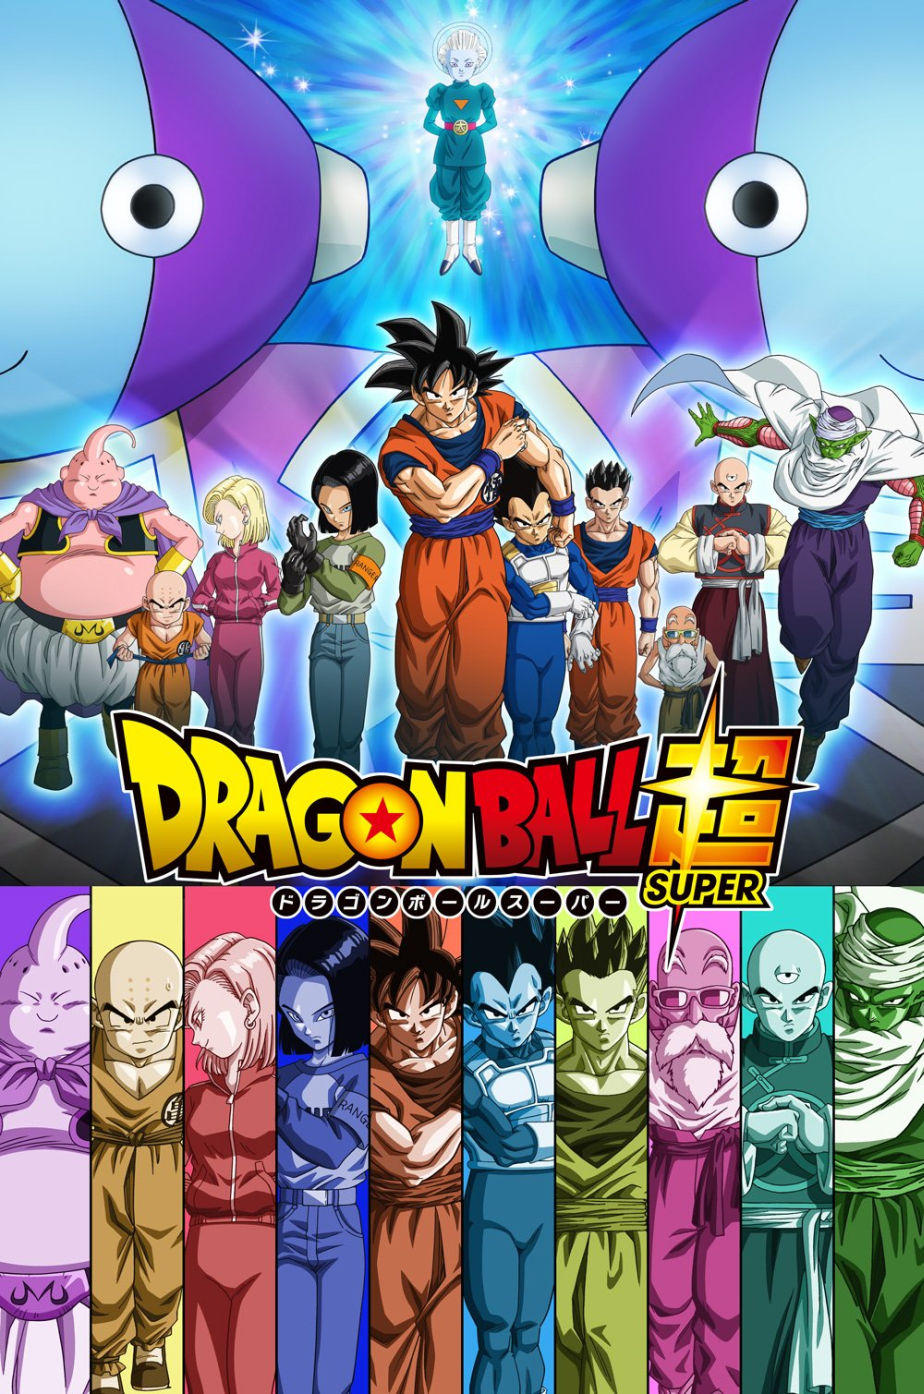 fondos de pantalla hd de dragon ball super,dibujos animados,anime,dibujos animados,personaje de ficción,héroe